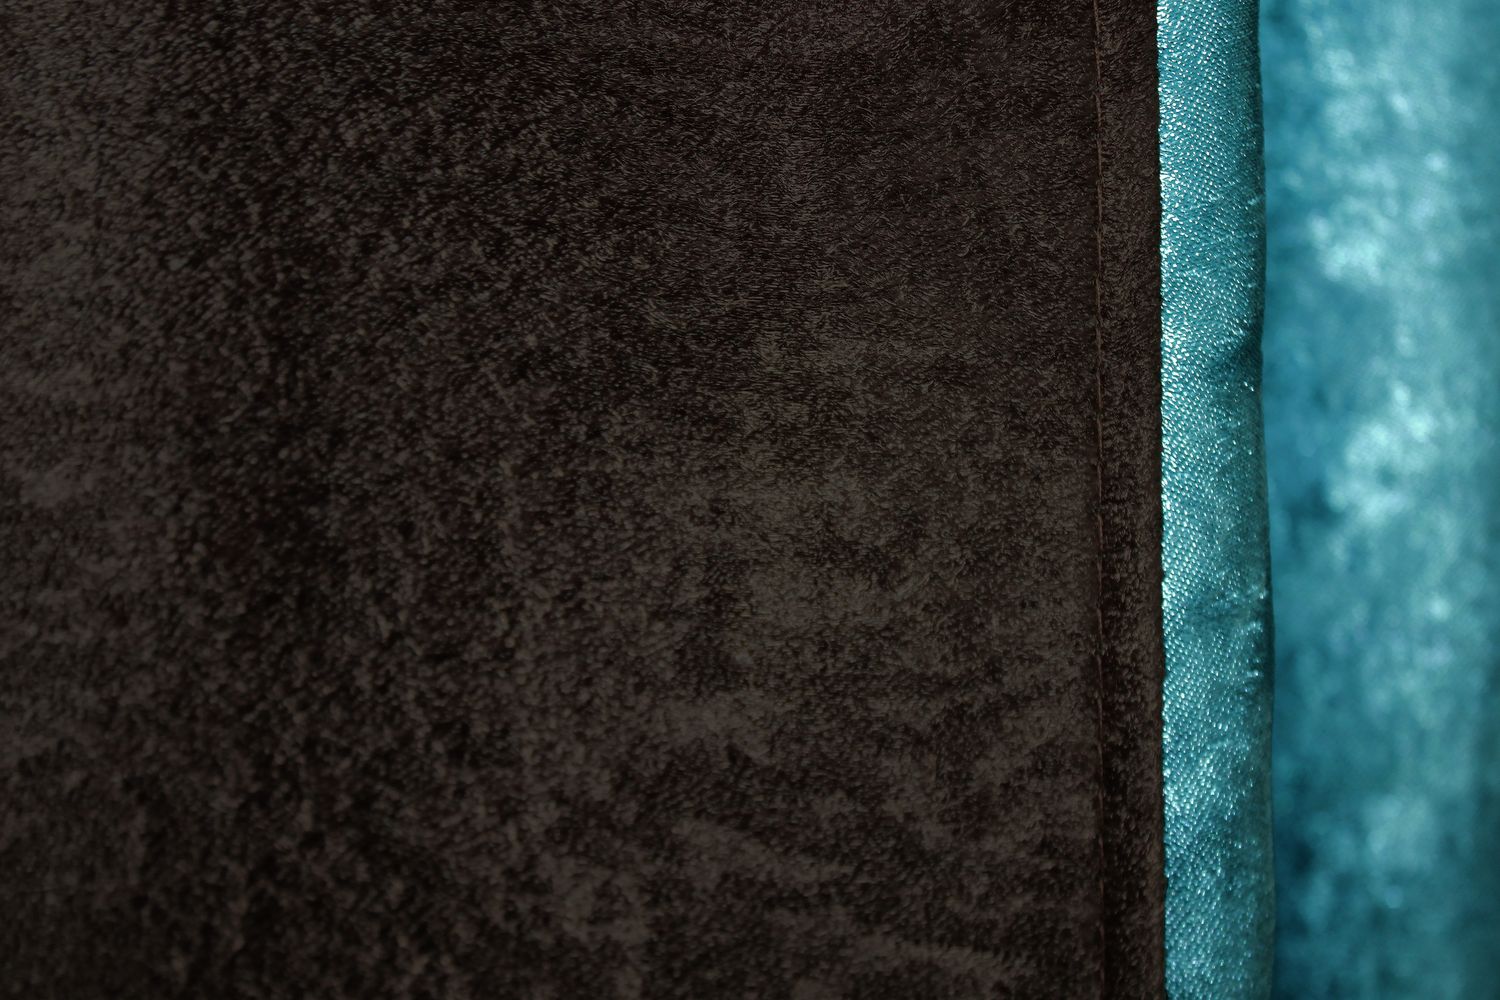 Комбинированные шторы из ткани софт цвет коричневый со светло-голубым 014дк (094-1049ш) , Коричневый со светло-голубым, Комплект штор (2шт. 1,25х2,7м.), Классические, Длинные, 1,25 м., 2,7 м., 125, 270, 2 - 3 м., В комплекте 2 шт., Тесьма